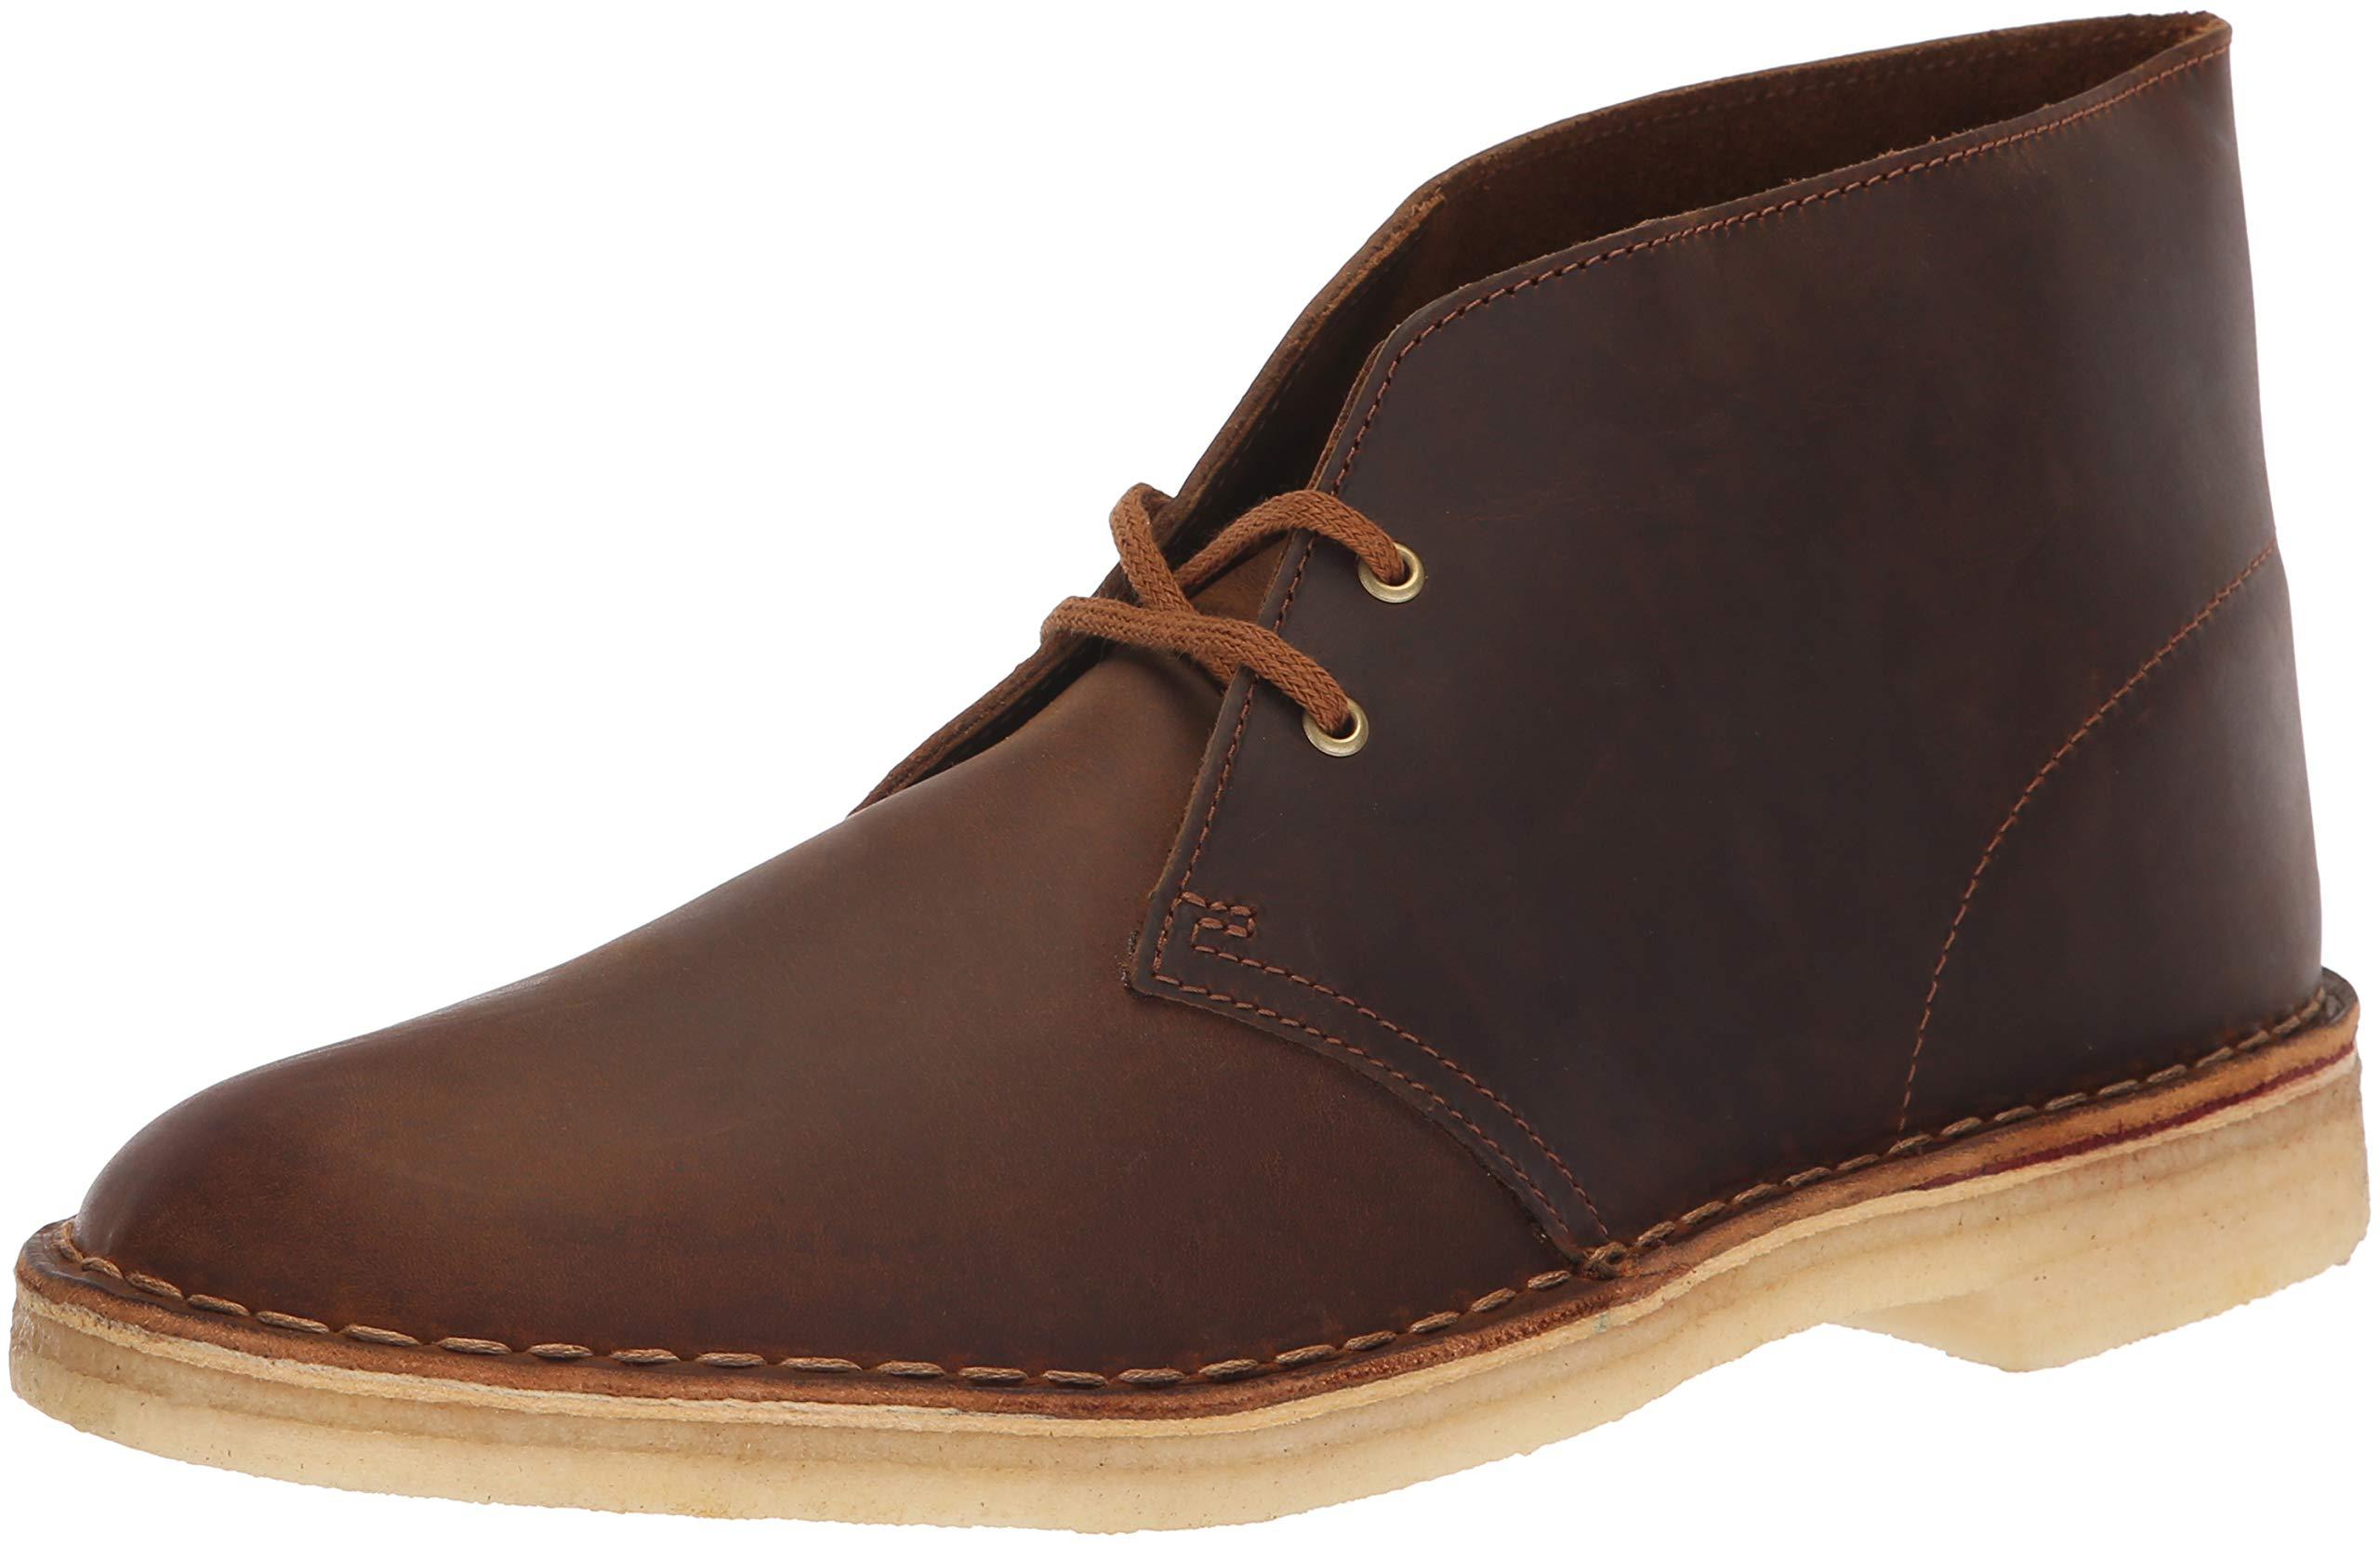 Clarks Leather Desert Chukka Boot in Brown for Men - Lyst